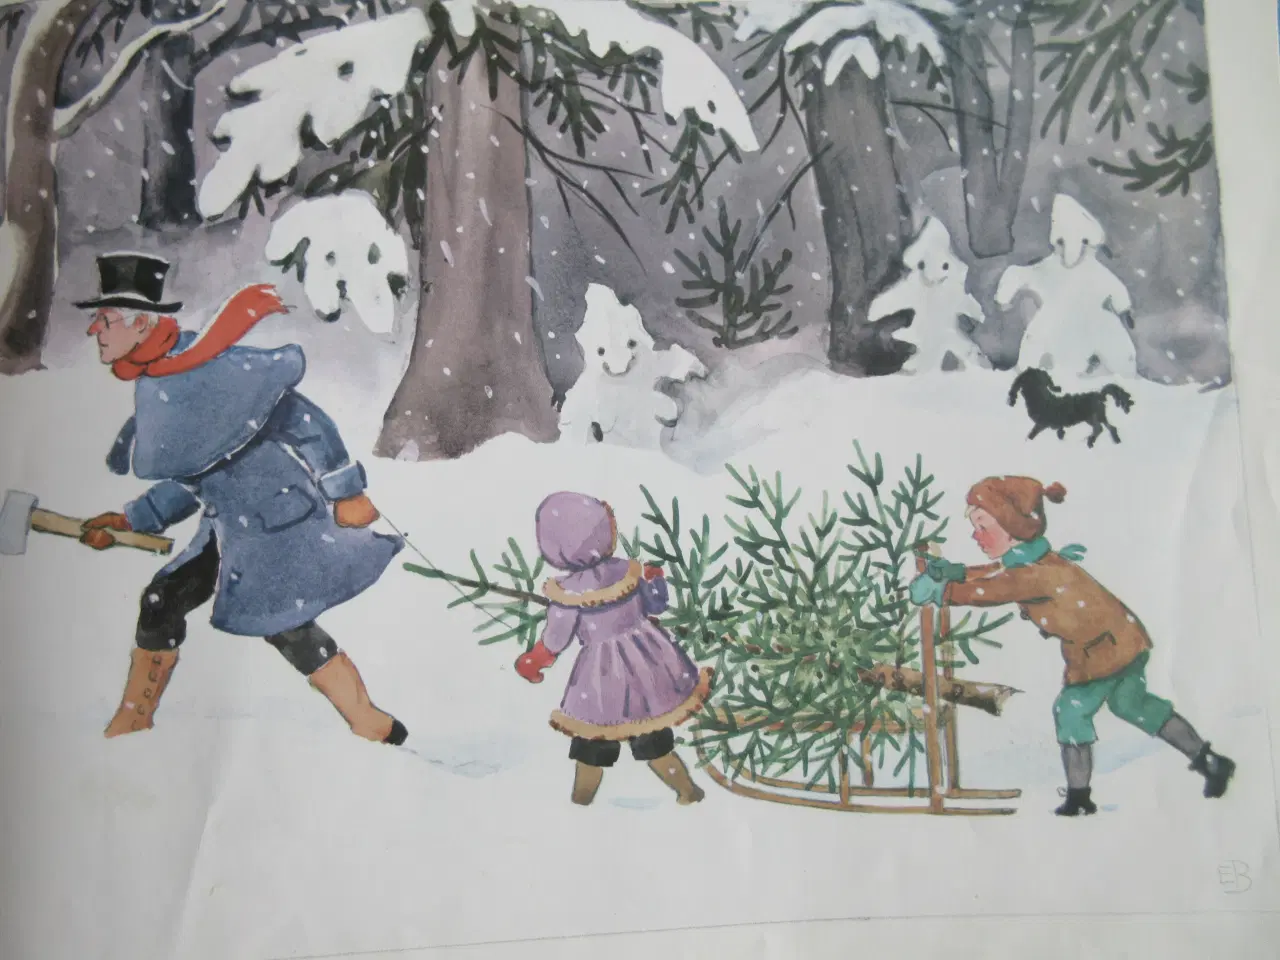 Billede 4 - Pers og Lottes jul - af Elsa Beskow ;-)